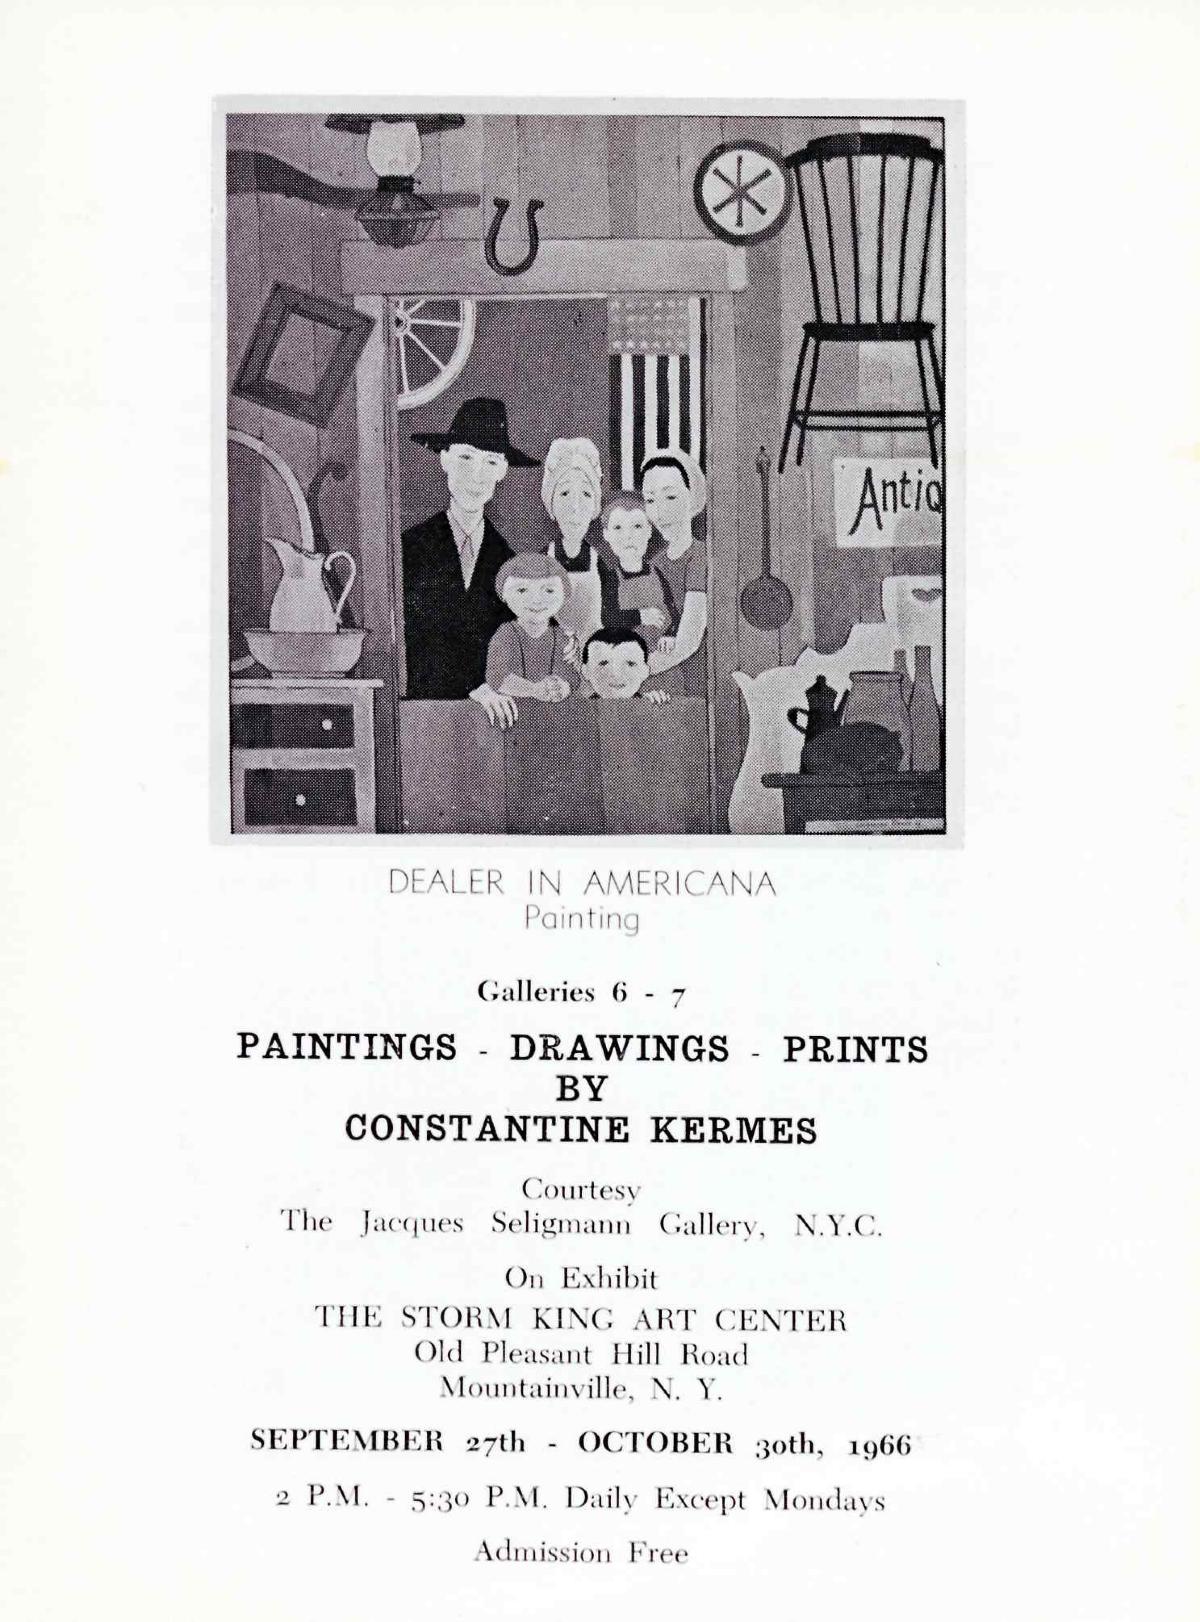 Paintings-Drawings-Prints by Constantine Kermes, September 27-October 30, 1966, brochure cover 